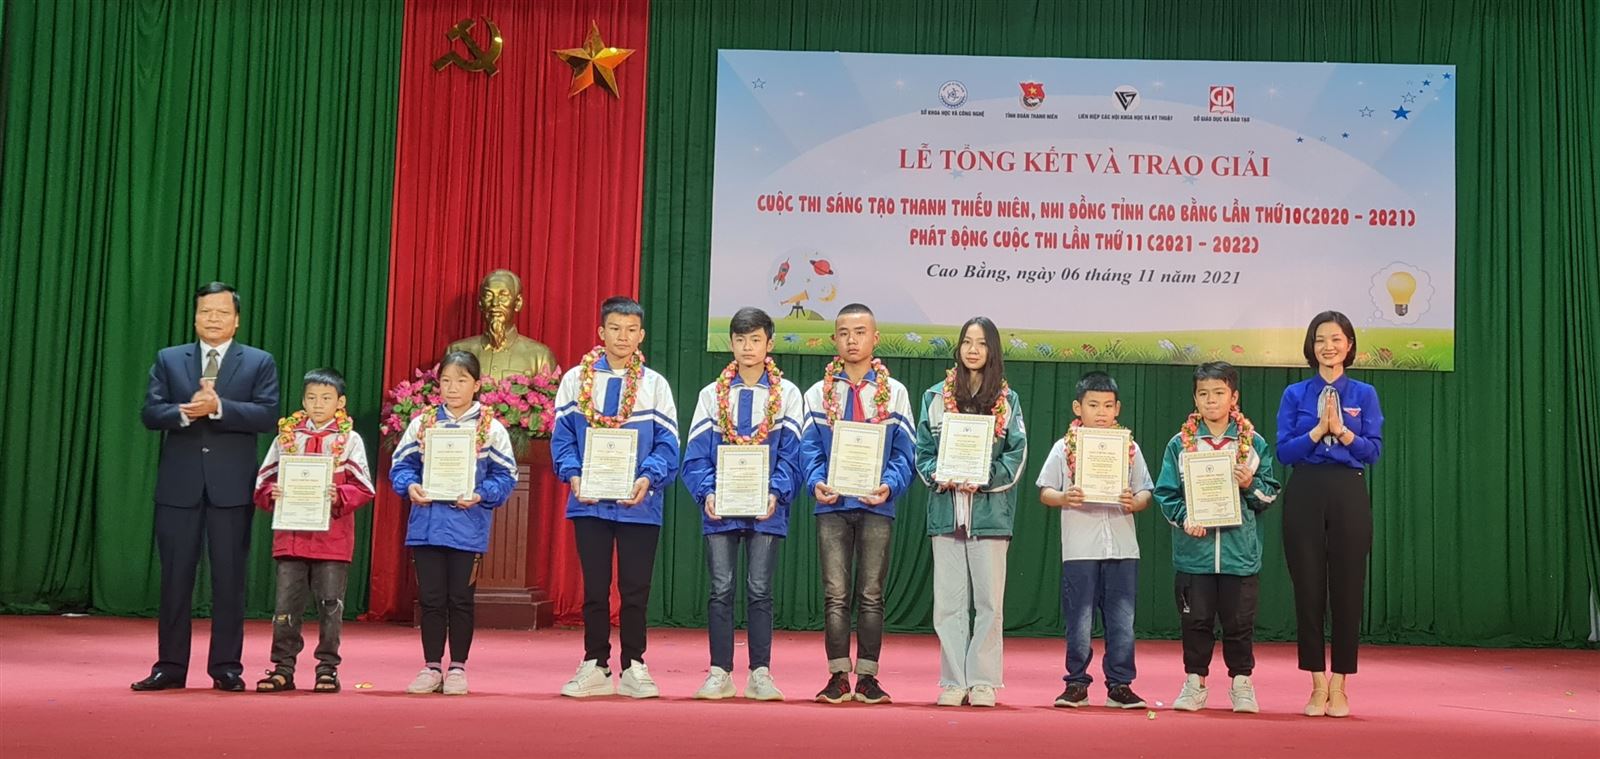 Cao Bằng: Tổng kết và trao giải Cuộc thi sáng tạo thanh thiếu niên, nhi đồng lần thứ 10.